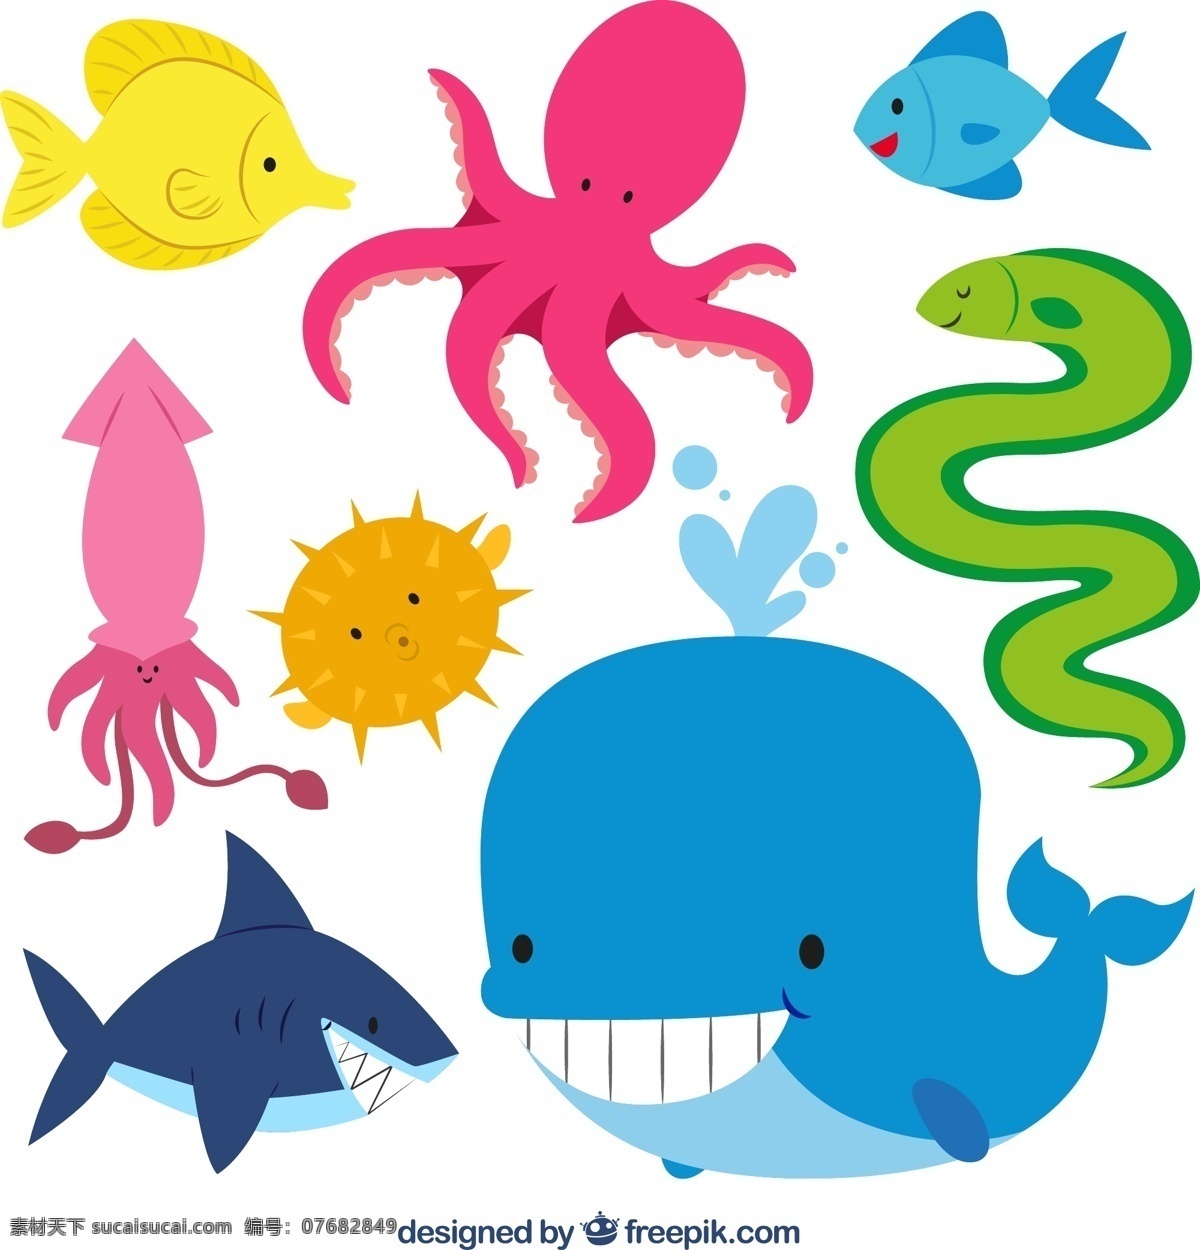 卡通海洋生物 彩色海洋生物 鱼 章鱼 鲸鱼 鱿鱼 河豚 鲨鱼 海鳗 海洋生物 动物